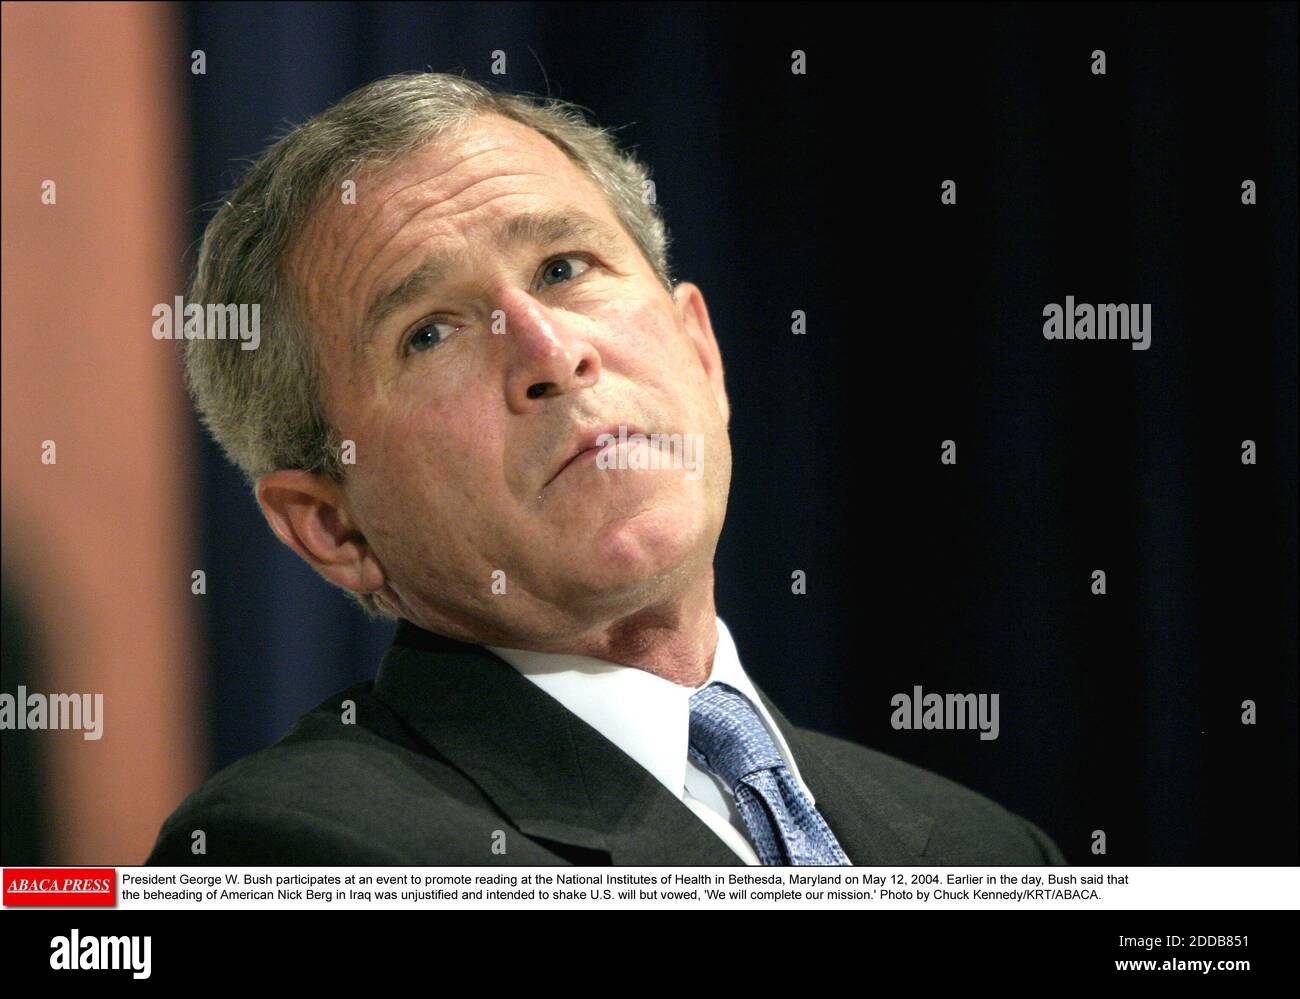 KEIN FILM, KEIN VIDEO, KEIN Fernsehen, KEIN DOKUMENTARFILM - Präsident George W. Bush nimmt an einer Veranstaltung zur Förderung des Lesens an den National Institutes of Health in Bethesda, Maryland am 12. Mai 2004 Teil. Früher am Tag sagte Bush, dass die Enthauptung des Amerikaners Nick Berg im Irak ungerechtfertigt sei und beabsichtigt, den US-Willen zu erschüttern, aber gelobte: "Wir werden unsere Mission erfüllen." Foto von Chuck Kennedy/KRT/ABACA. Stockfoto